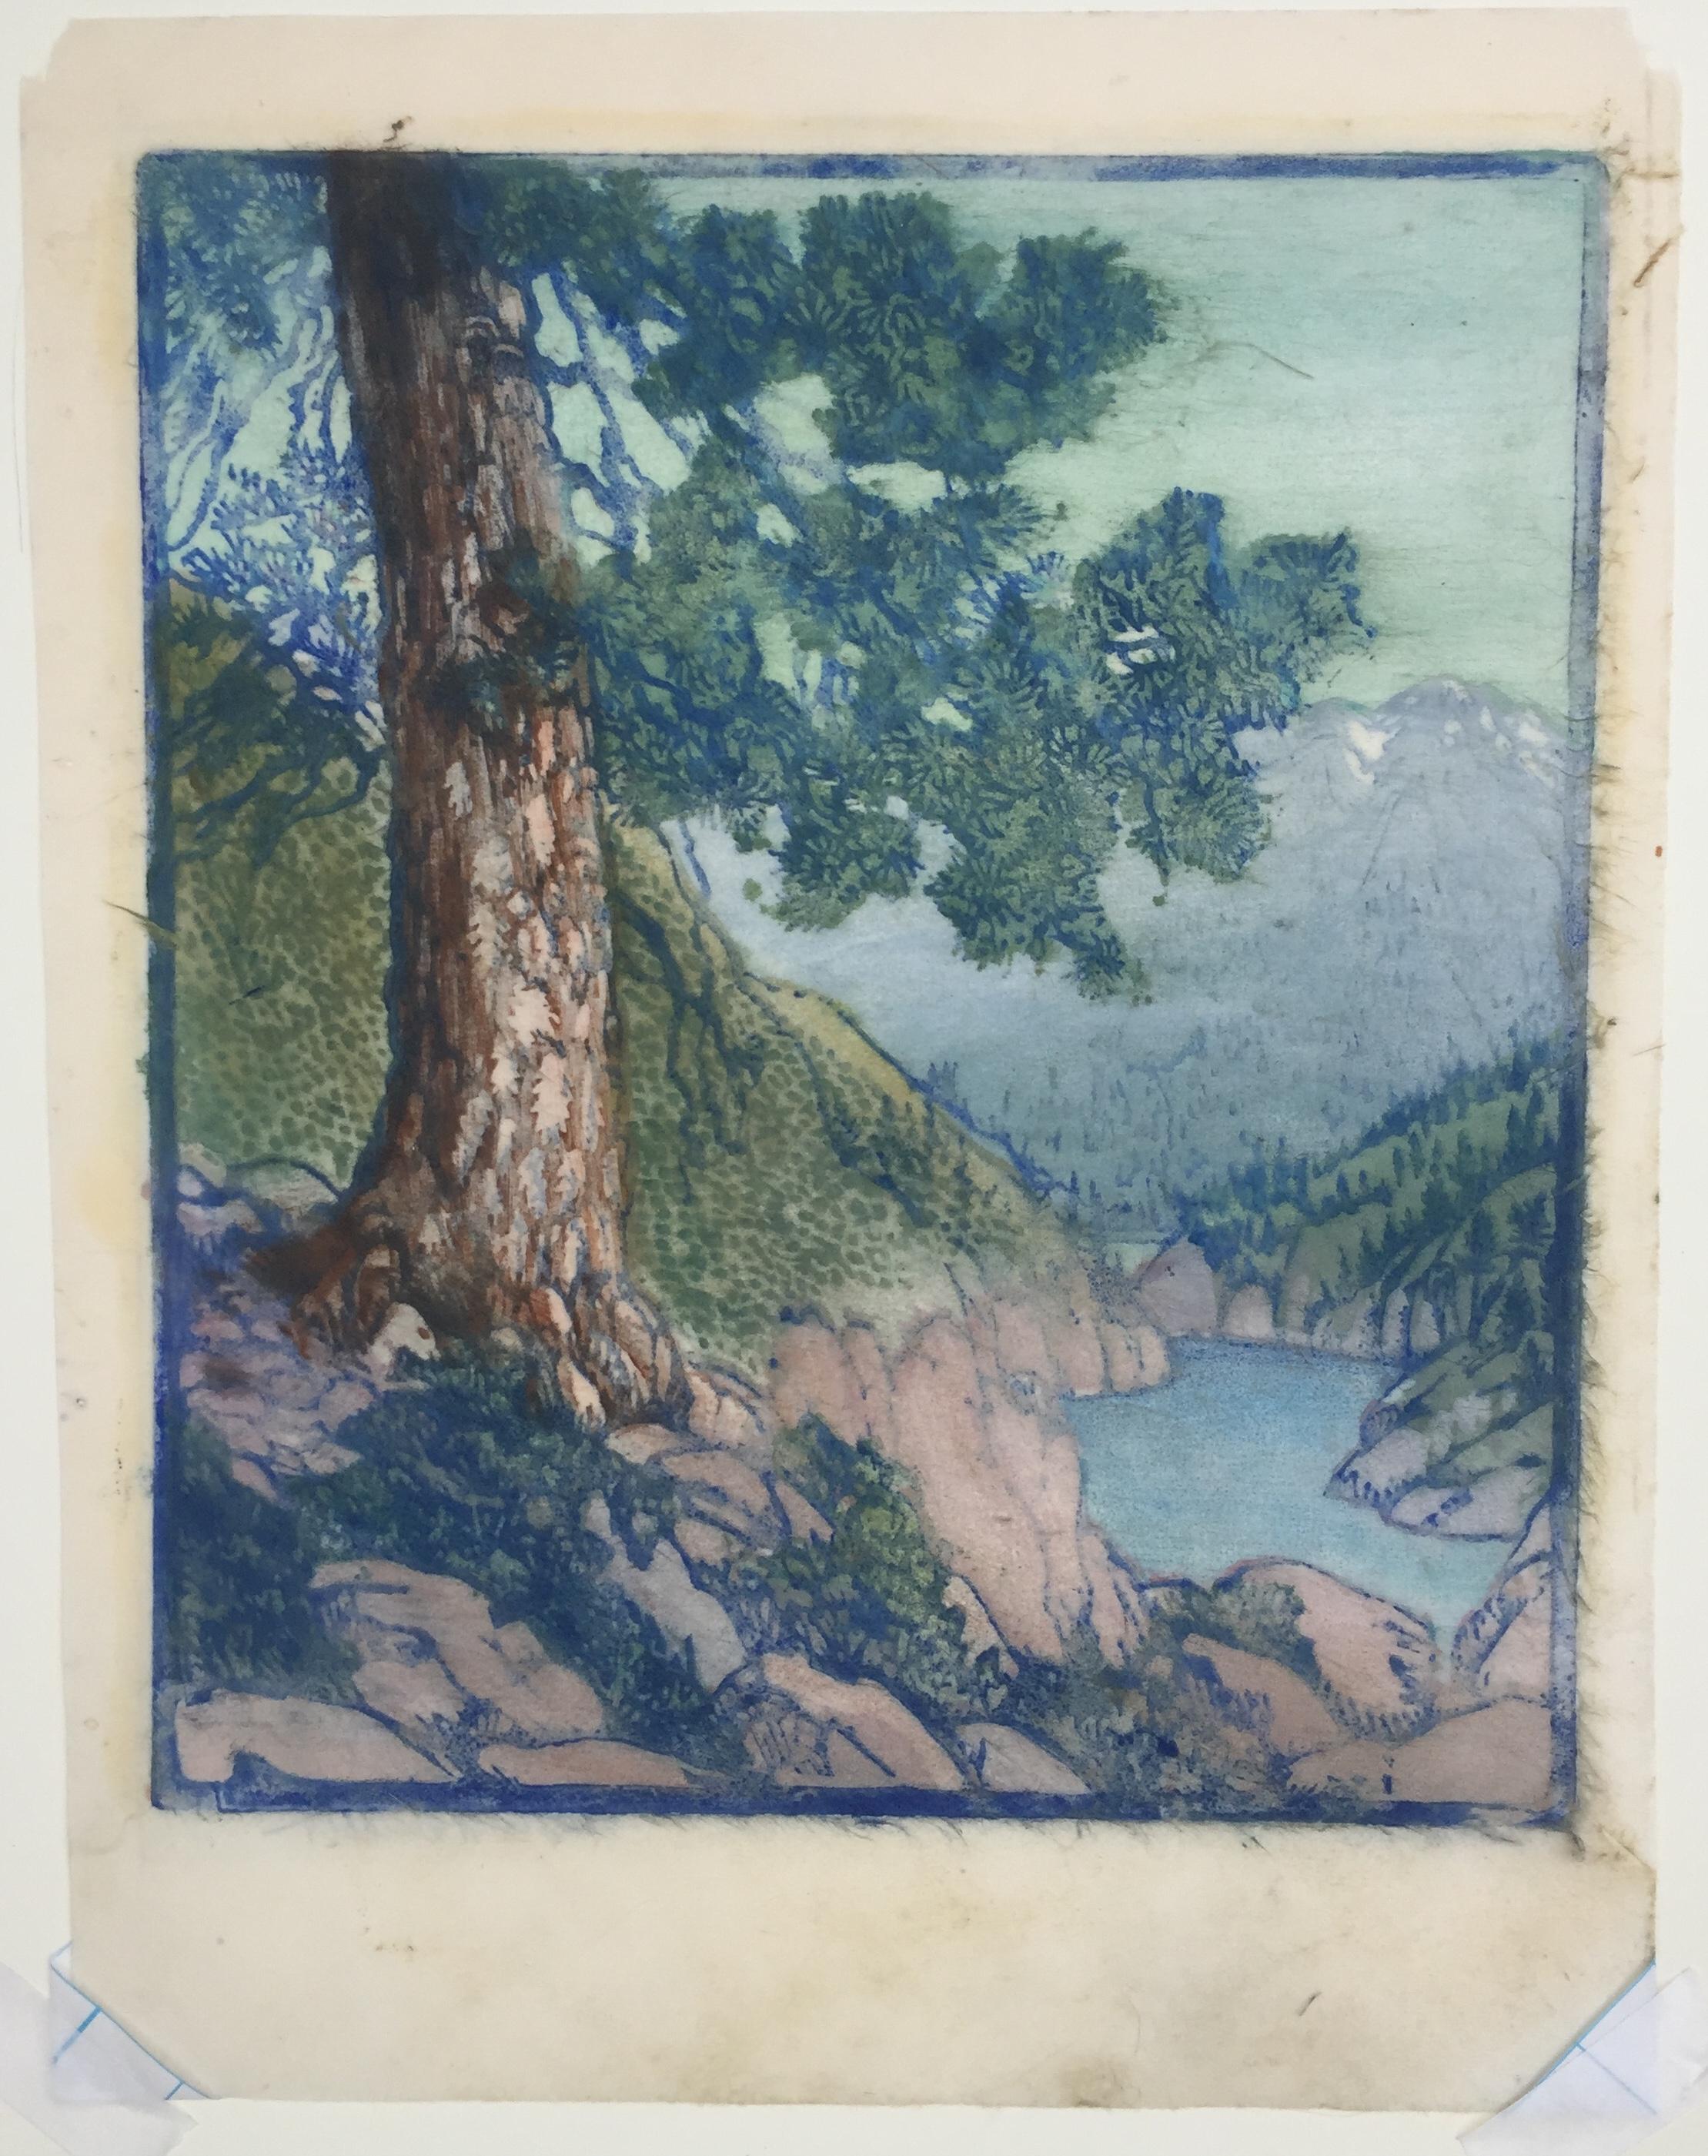 FRANCES H. GEARHART (1869-1958)

THE OLD PINE (auch Big Pine genannt) ca. 1930-32
Farbblockdruck mit Bleistift signiert und betitelt. 11 1/2